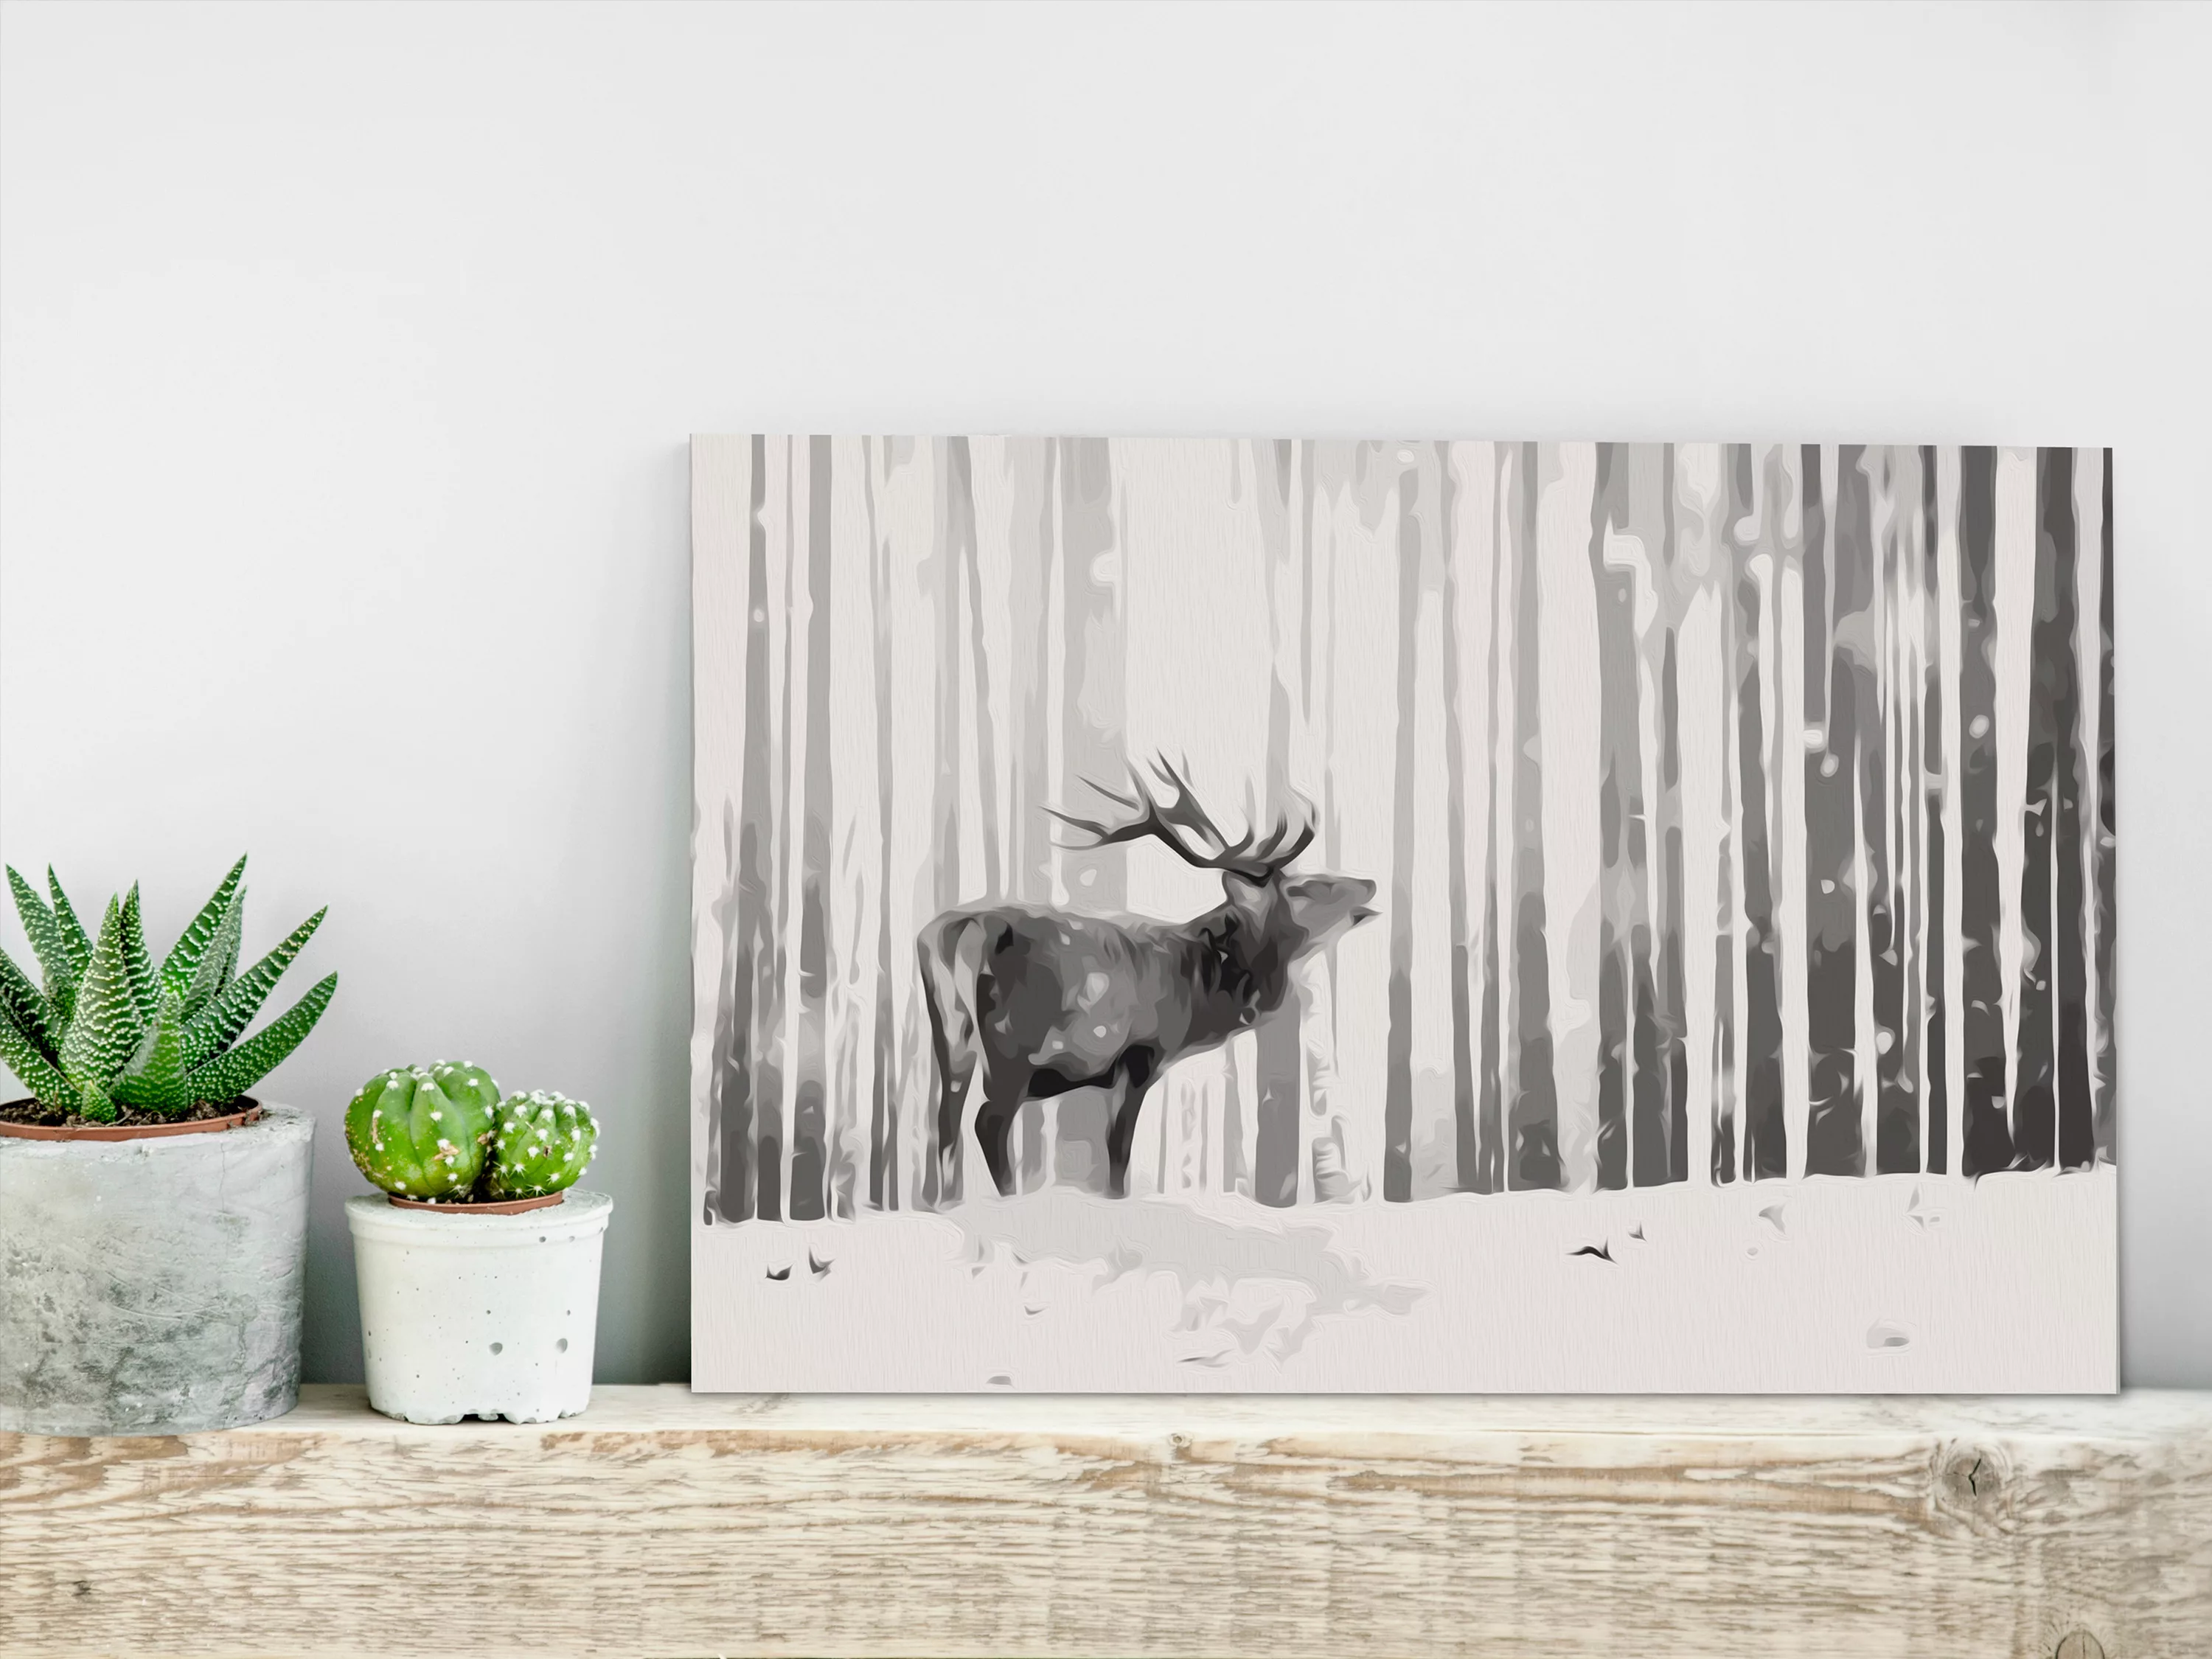 Malen Nach Zahlen - Deer In The Snow günstig online kaufen